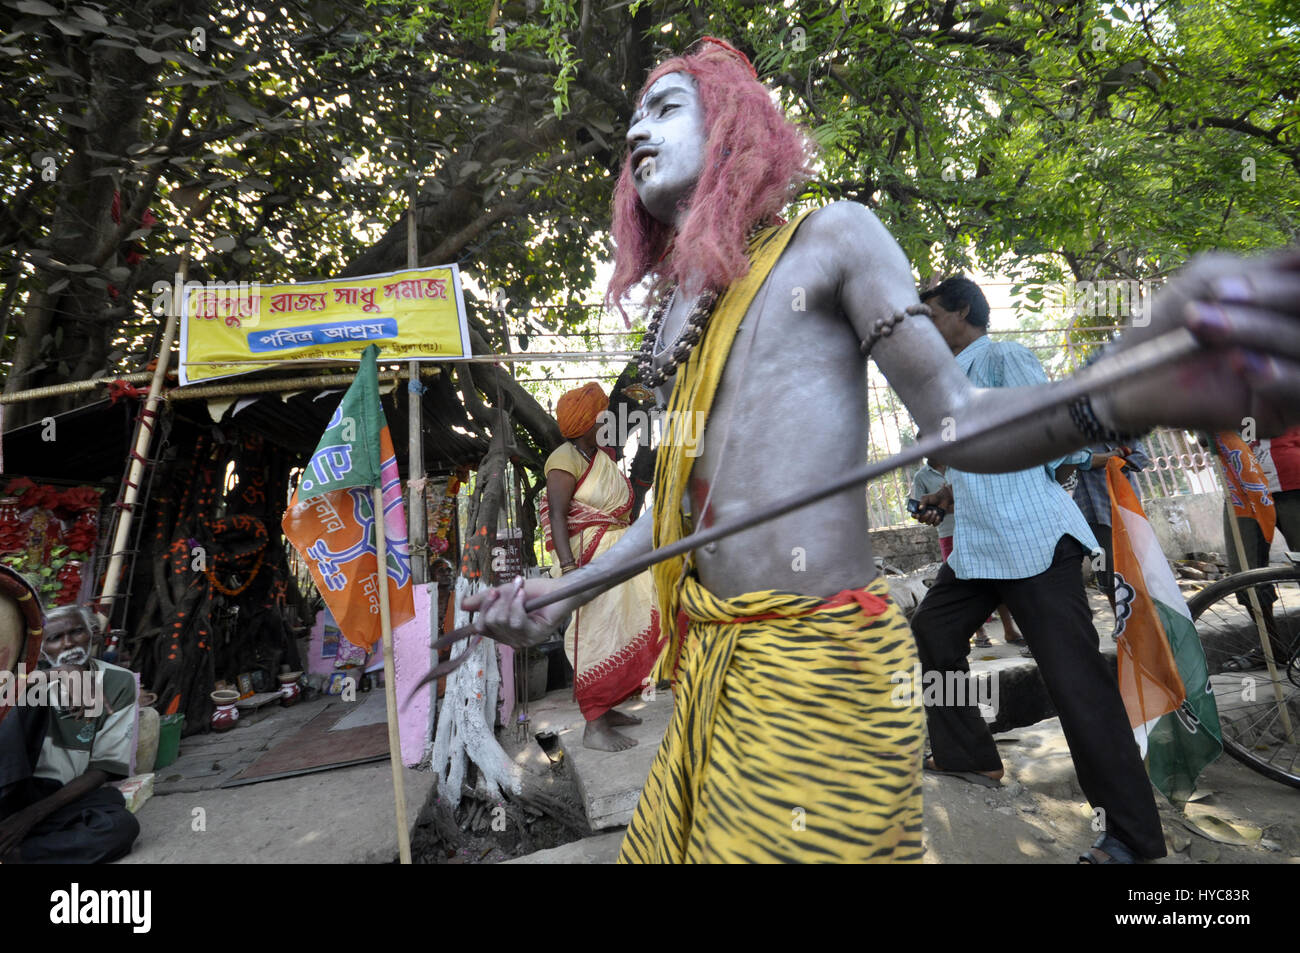 India : Gajan Festival - 21/03/2014 - India / Tripura / Agartala - gente vestida como dios Shiva y Godess Gouri, bailar después de tomar canabbies en Agartala, capital del nororiental estado de Tripura. Esta es una parte del Festival Gajan, un festival popular en la India. Gajan es un festival hindú celebrado principalmente en el estado indio de Bengala Occidental. Se asocia con tales deidades como Shiva, Neel y Dharmathakur. Gajan abarca alrededor de una semana, s Foto de stock